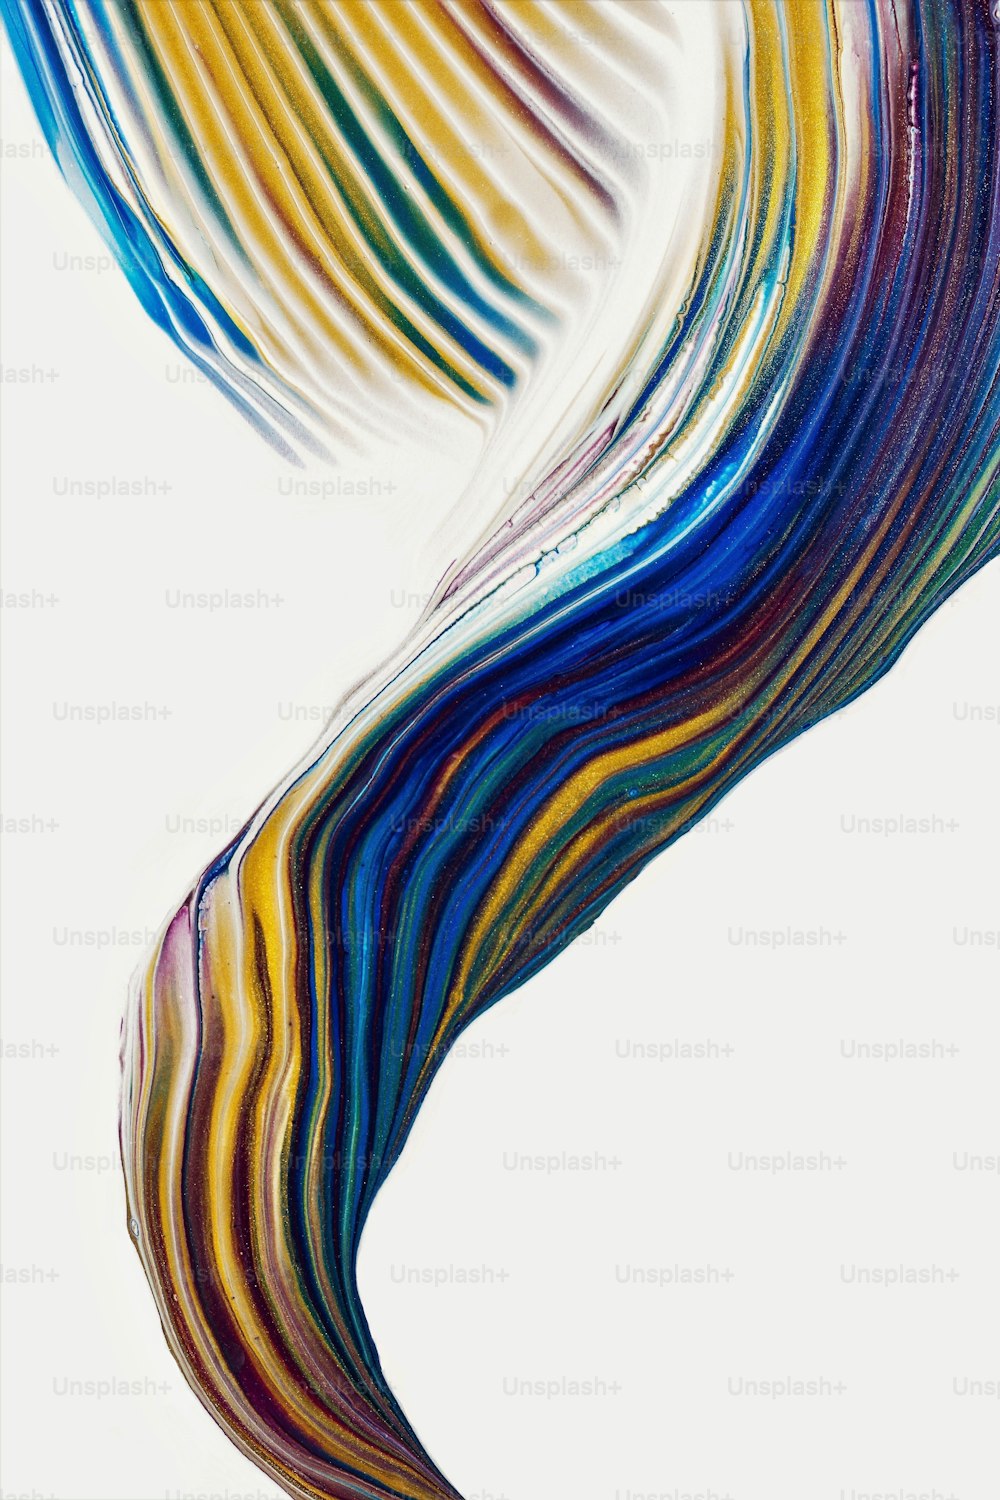 Una pintura abstracta de líneas multicolores sobre un fondo blanco